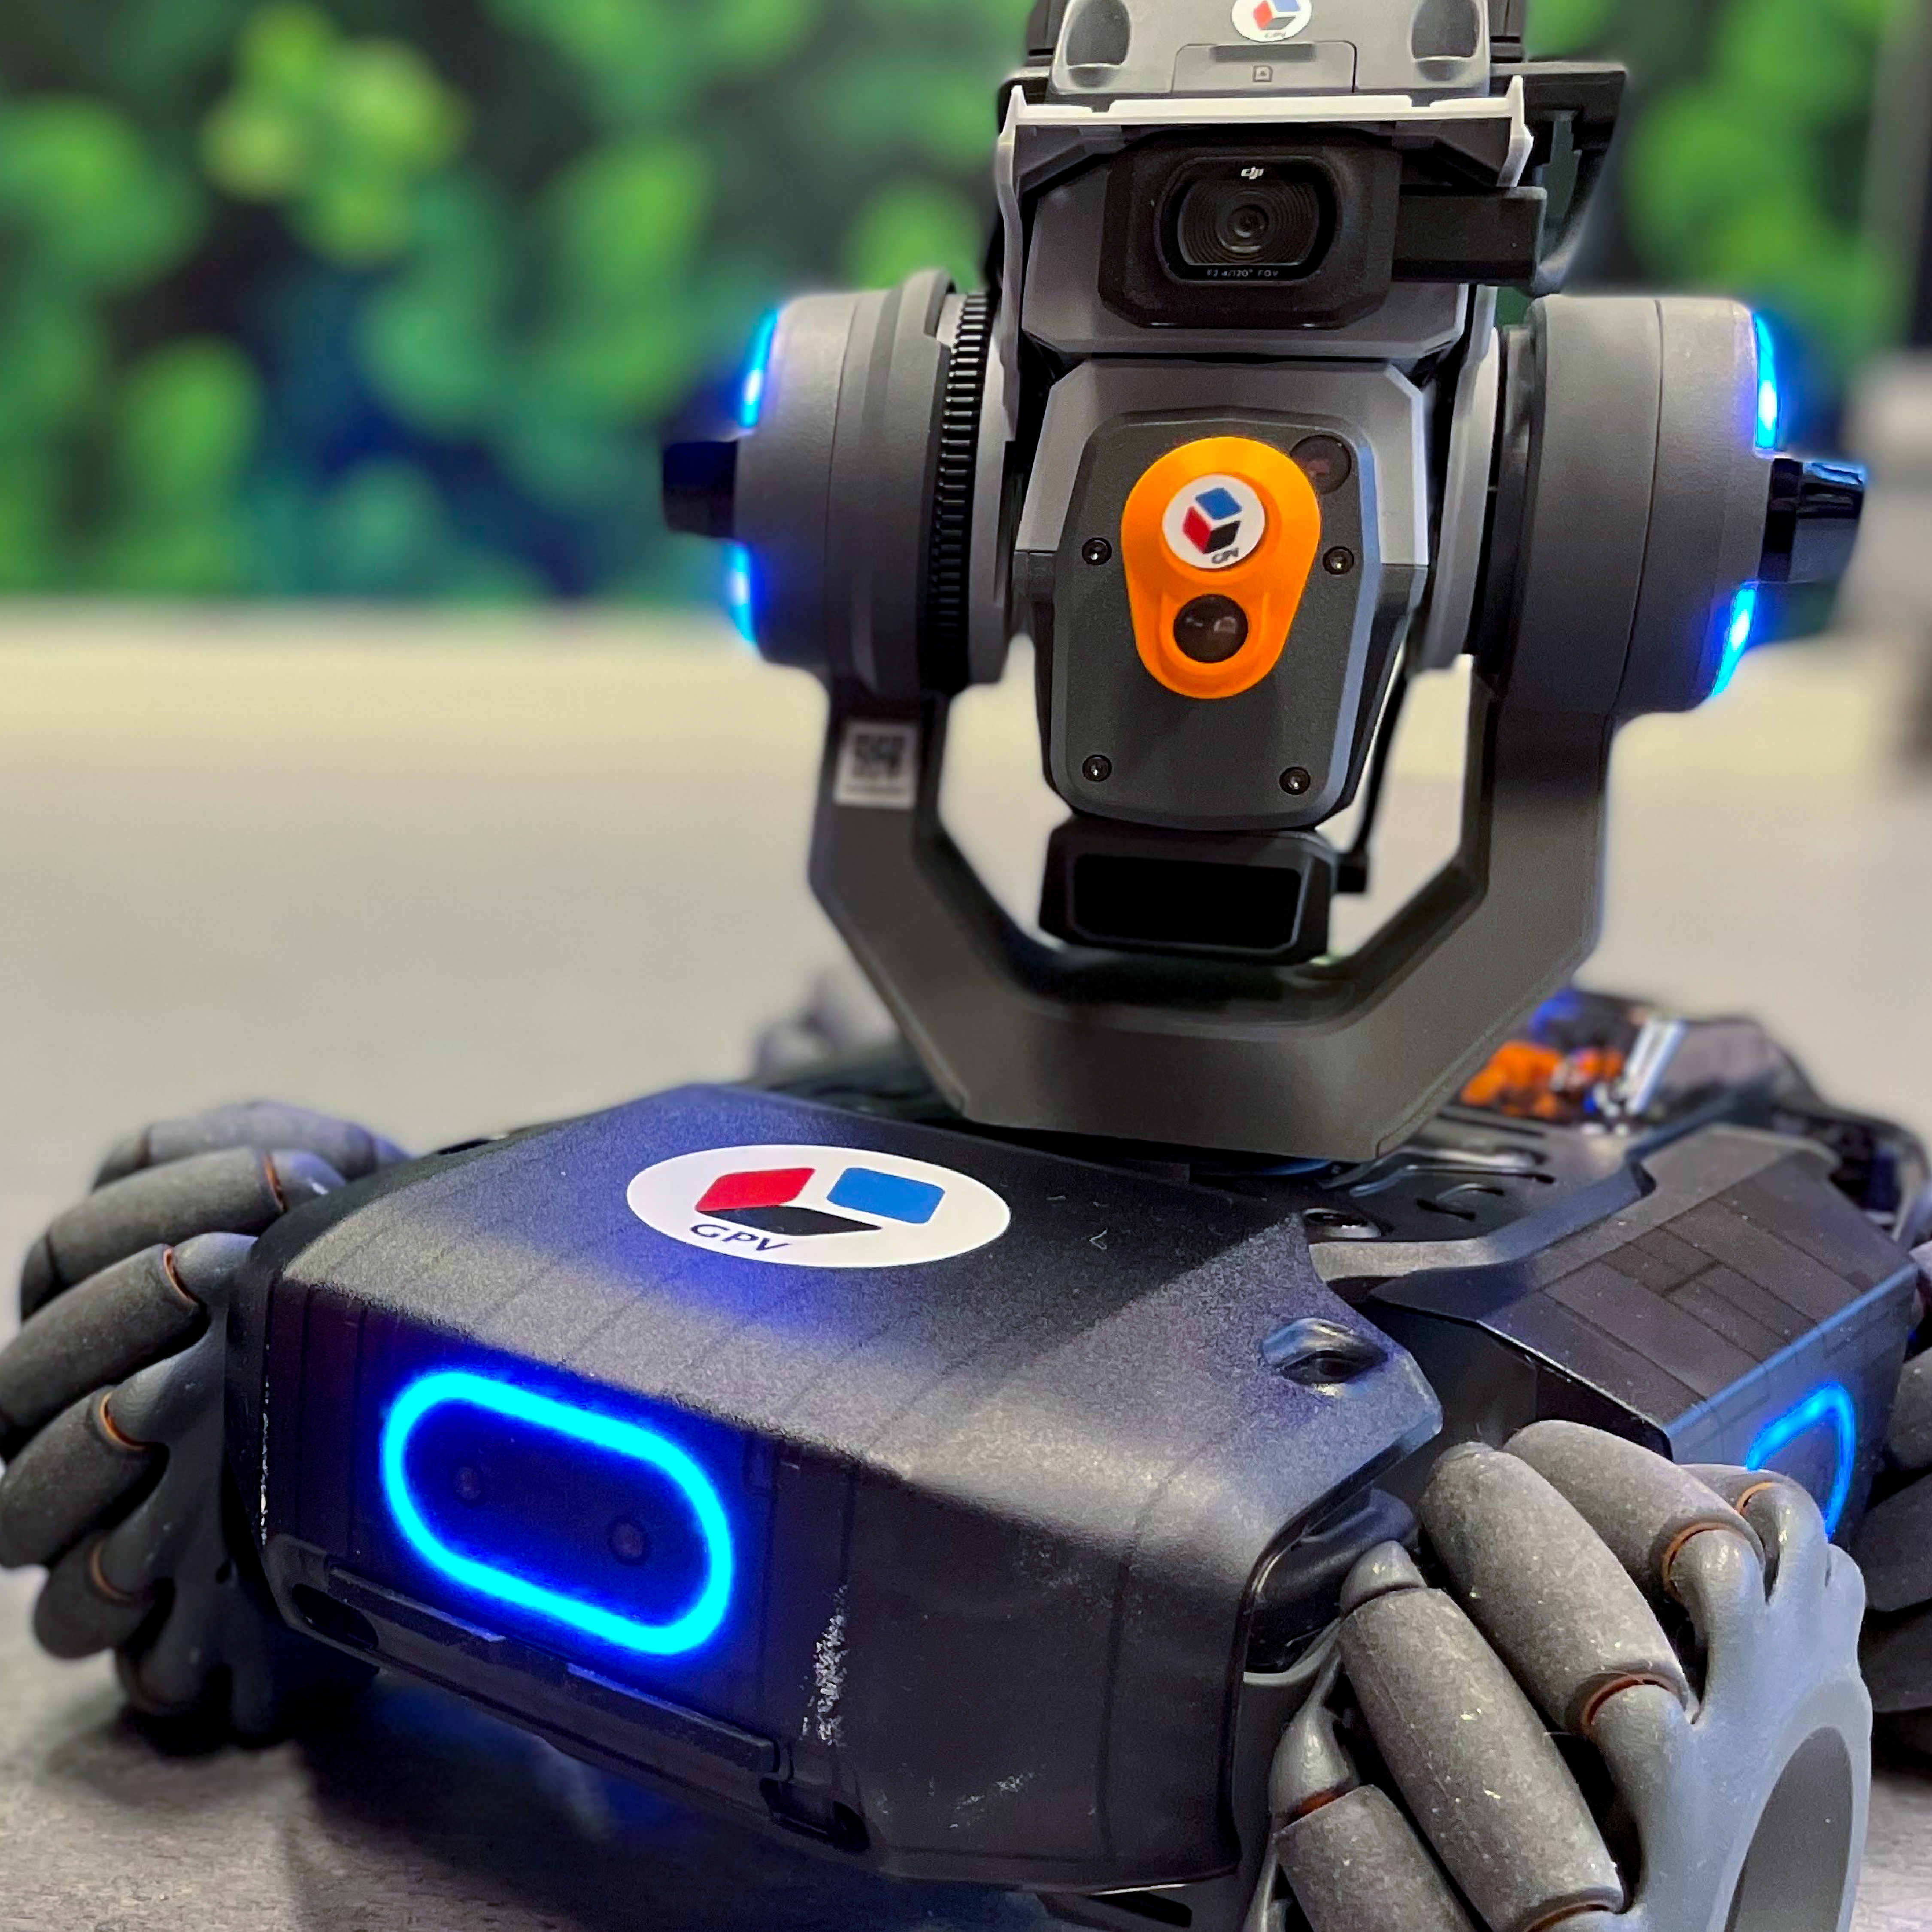 DJI RoboMaster S1 robot